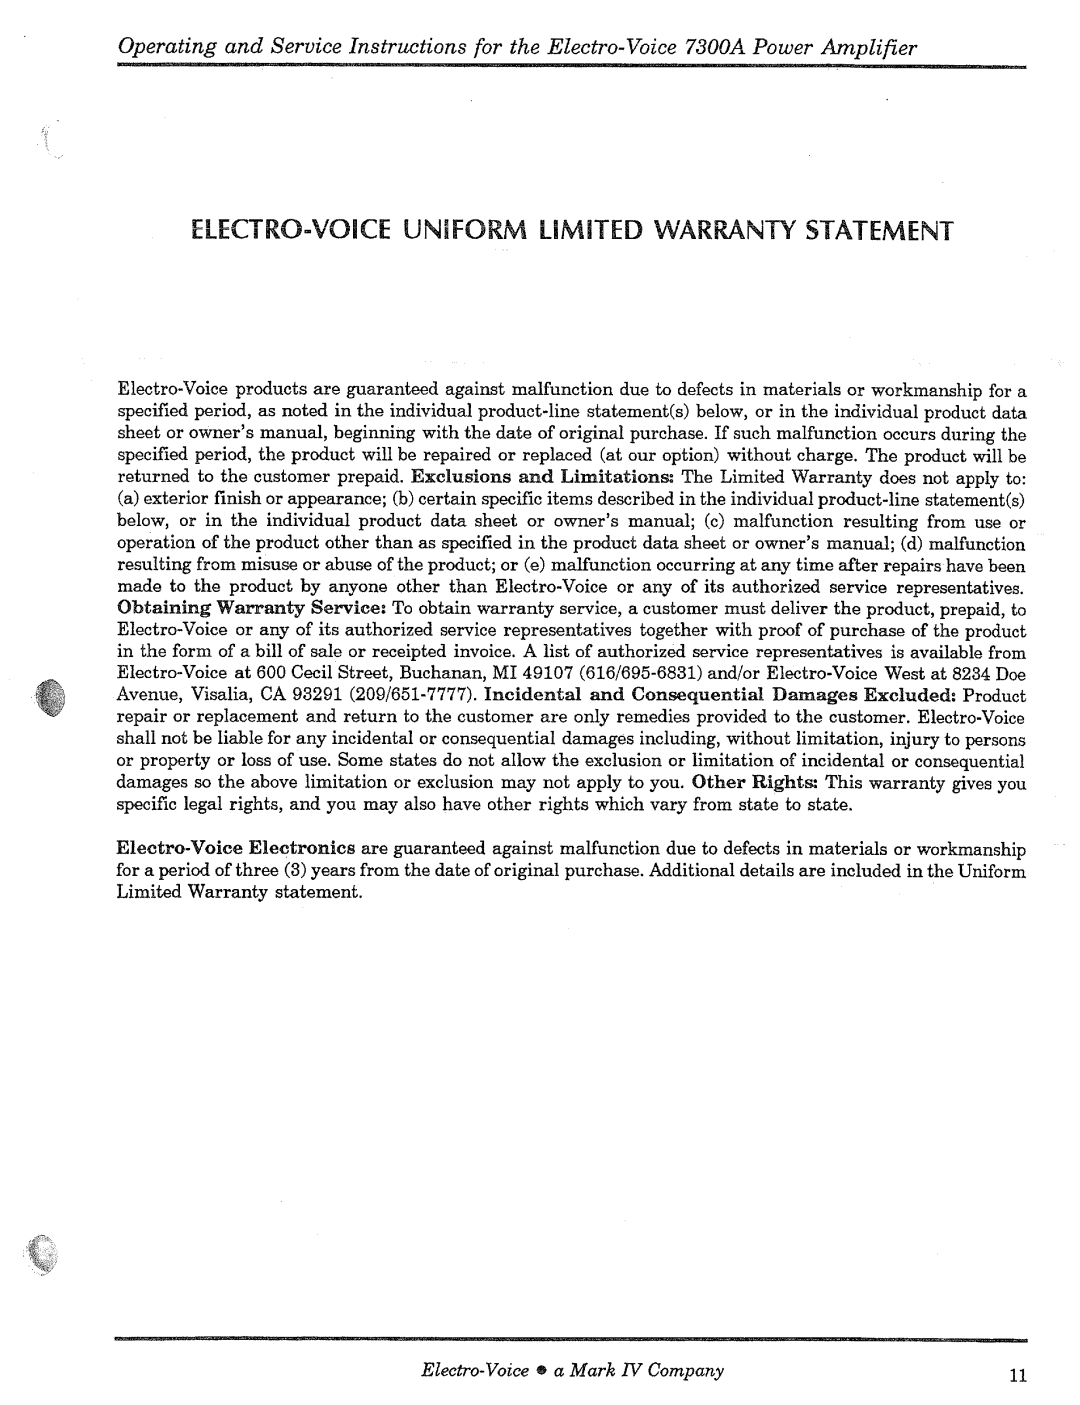 Electro-Voice 7300A manual 